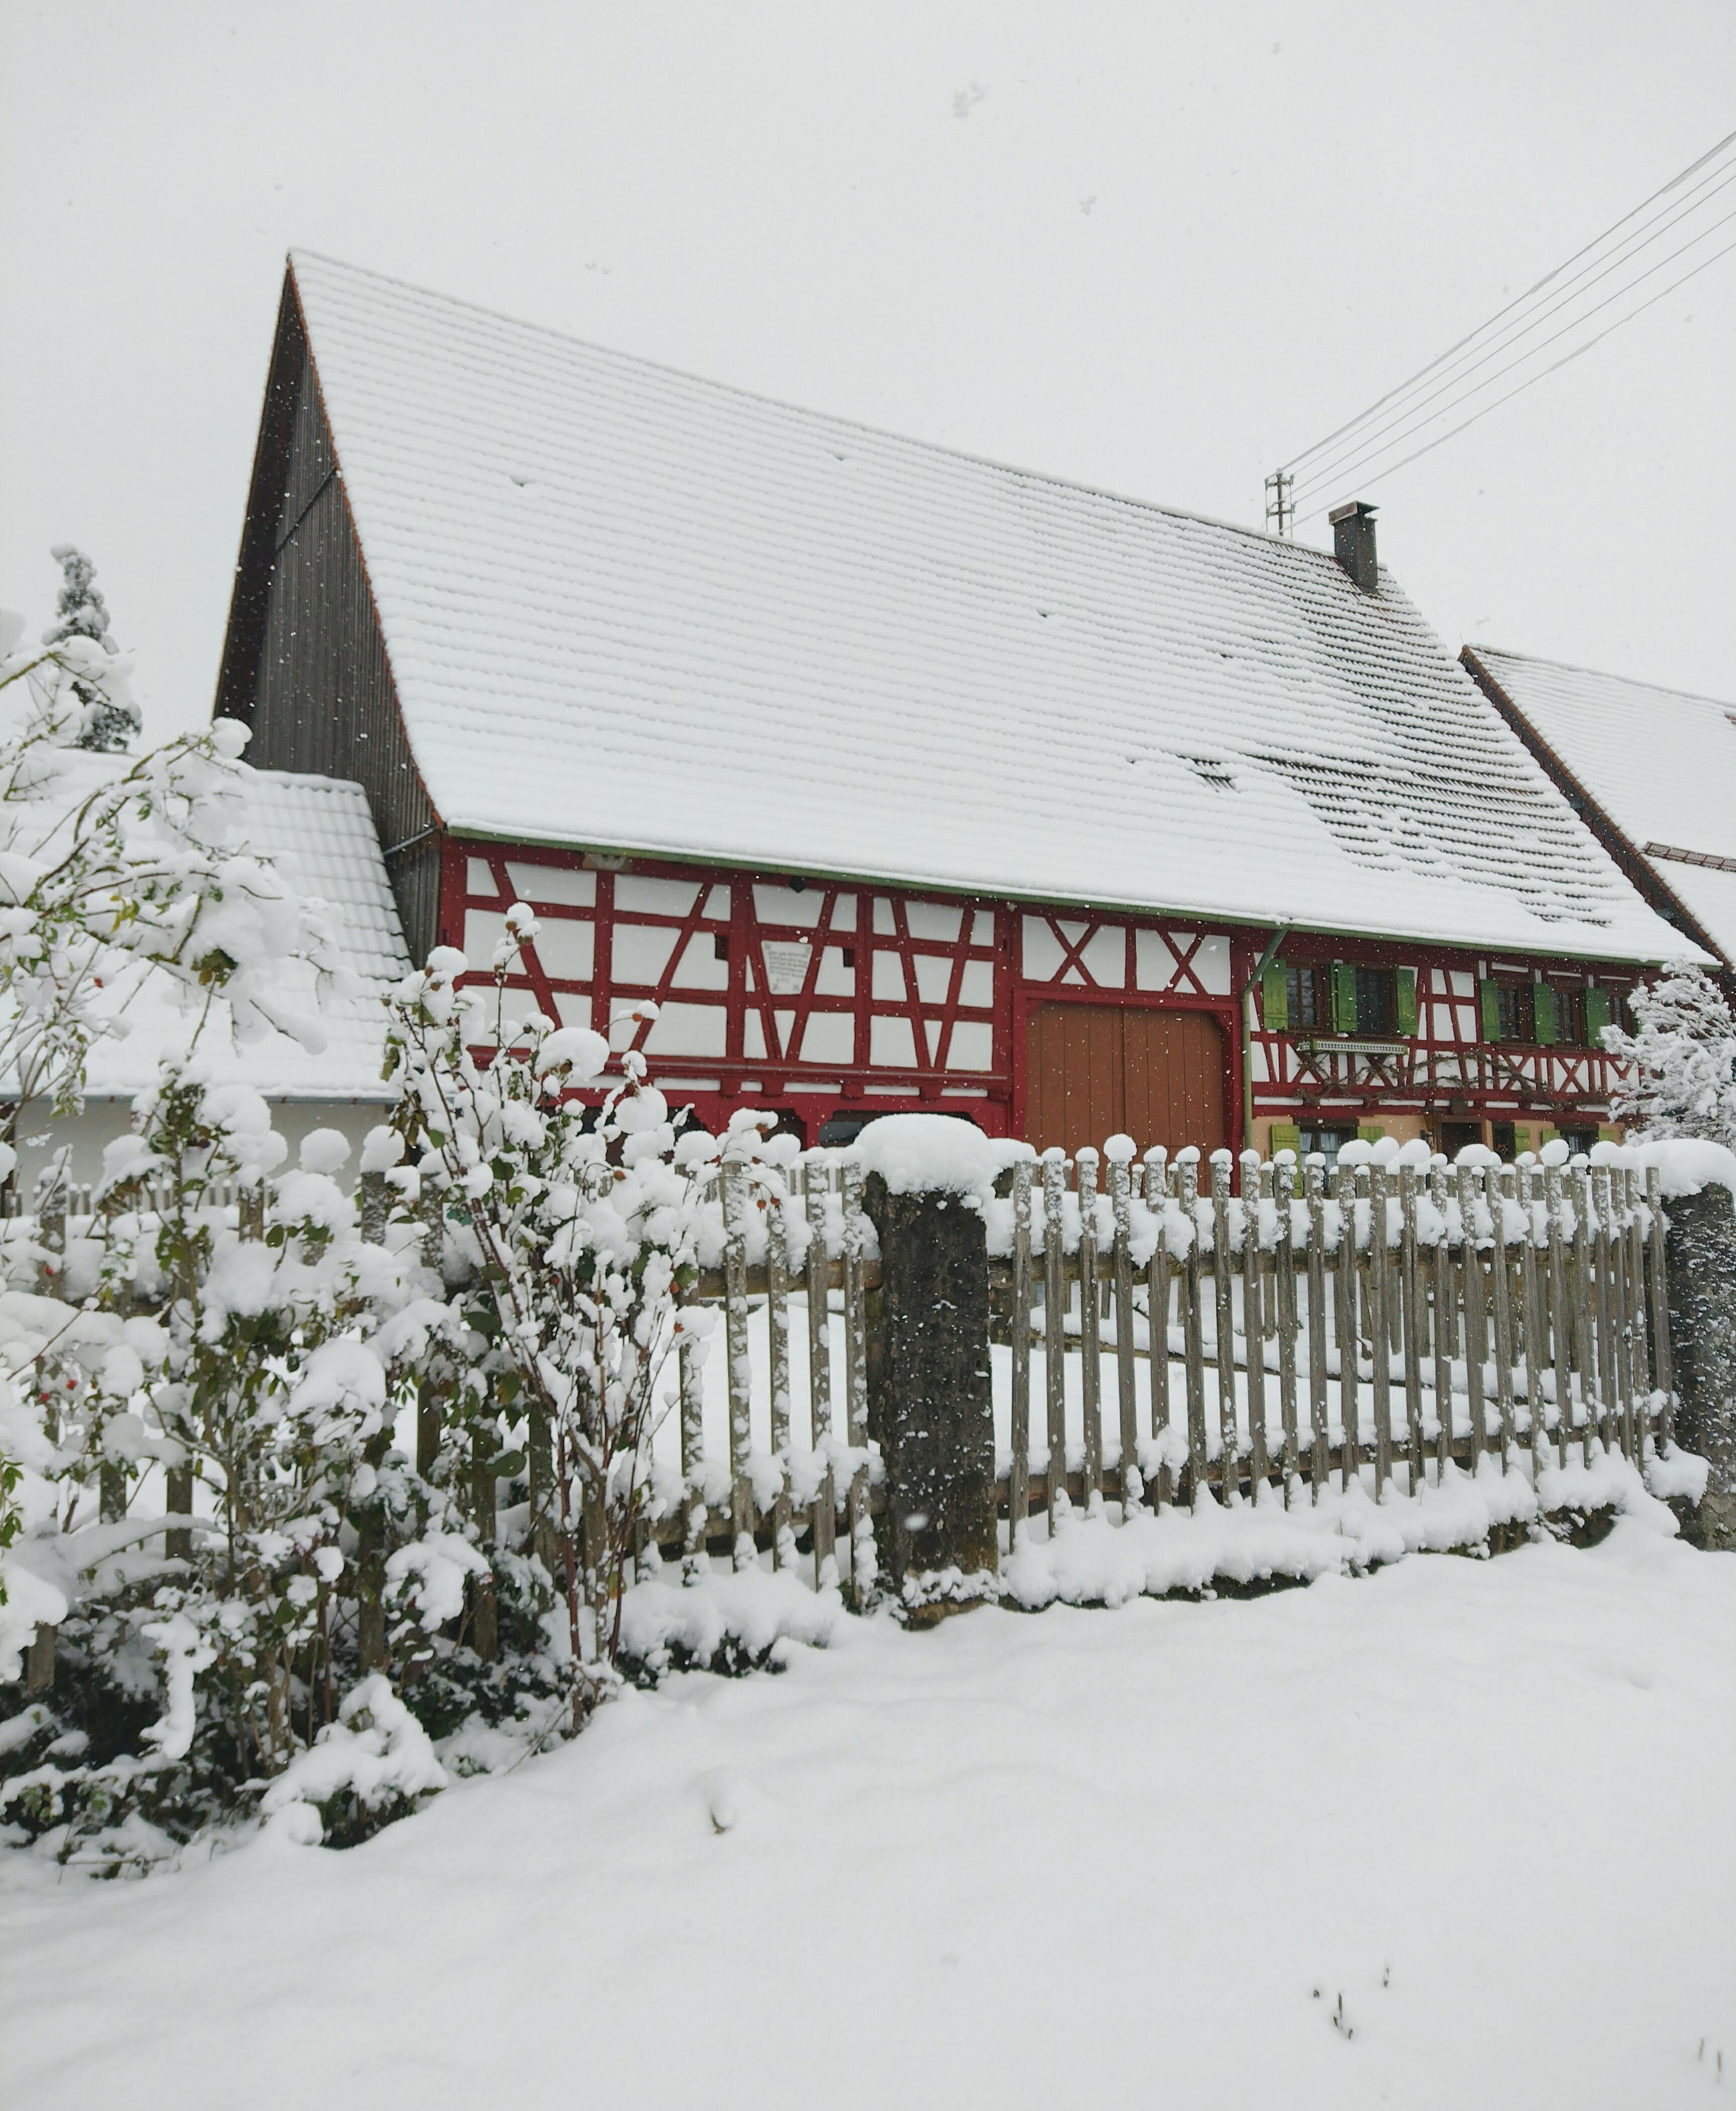 Winterwonderland ❄️❄️❄️
#fachwerkhaus #fachwerkliebe #schnee #winter #schneeliebe